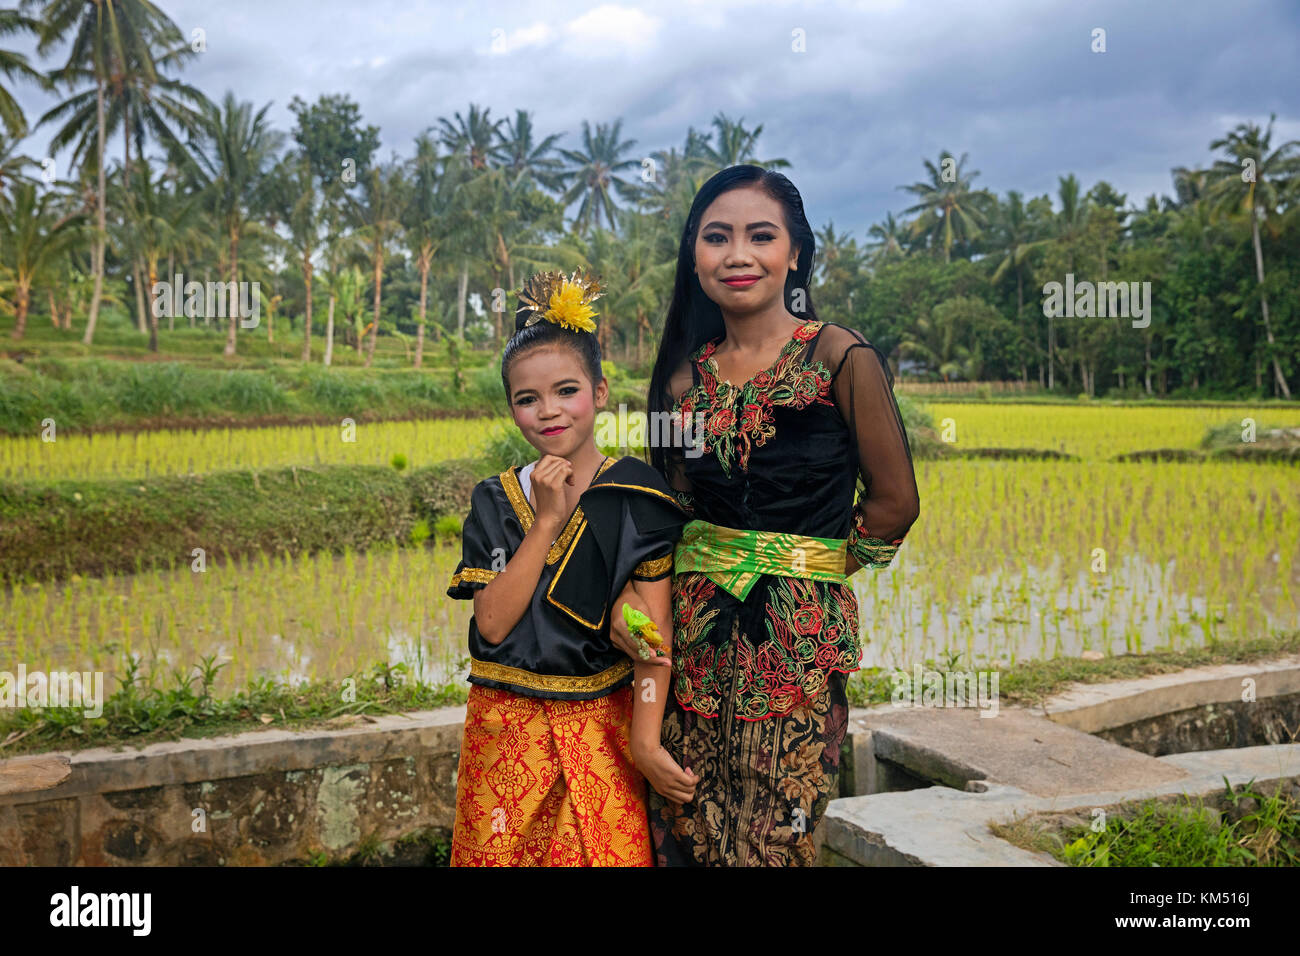 Indonesische junge Frau und Mädchen in schönen traditionellen Kleid in den Reisfeldern in der Nähe von tetebatu auf der Insel Bali, Indonesien Stockfoto